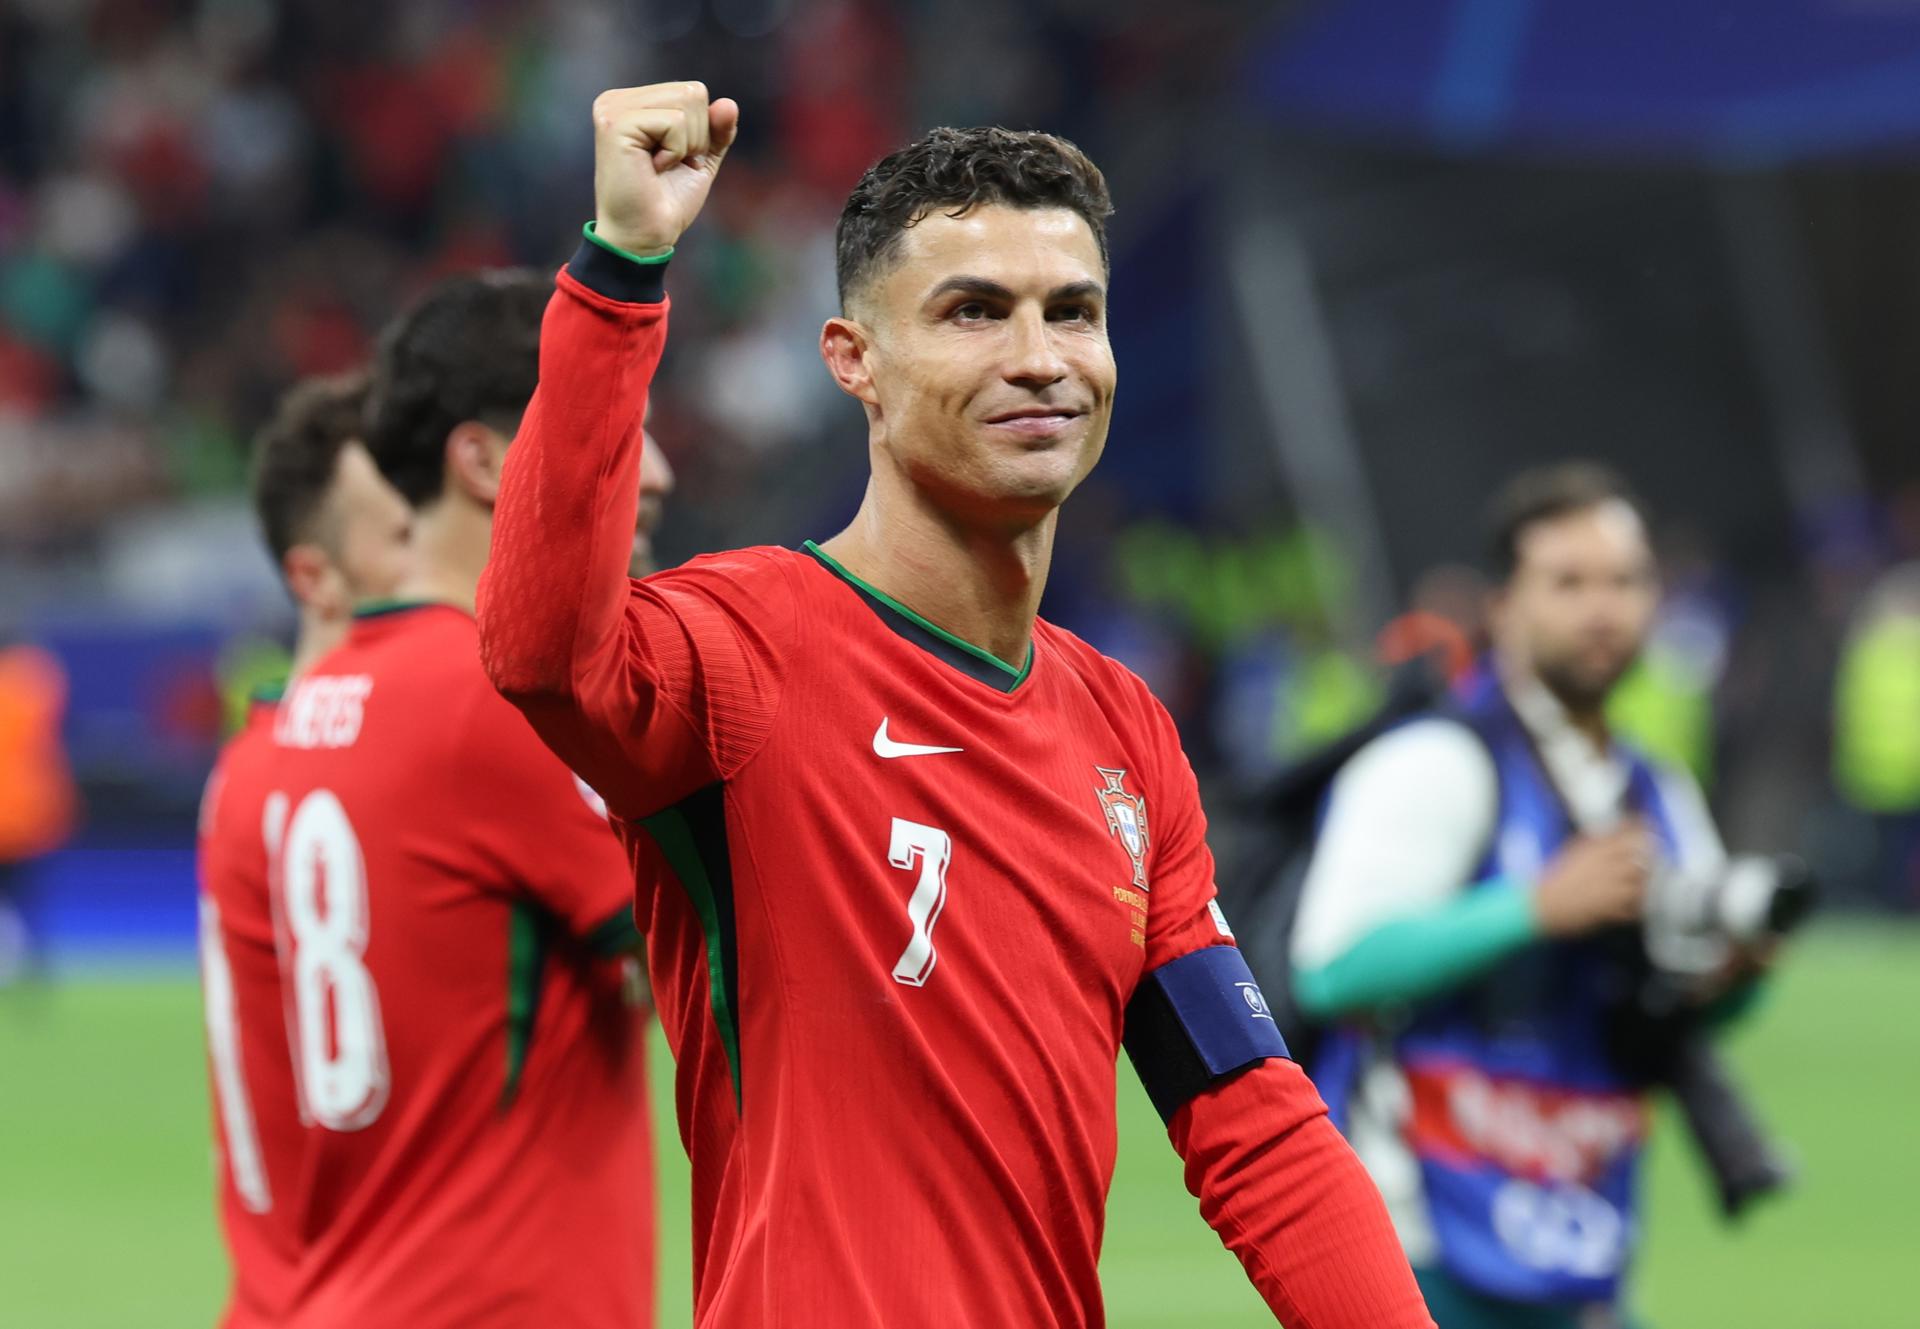 “Tristeza inicial y alegría final, es inexplicable”, contó Cristiano Ronaldo tras victoria de Portugal